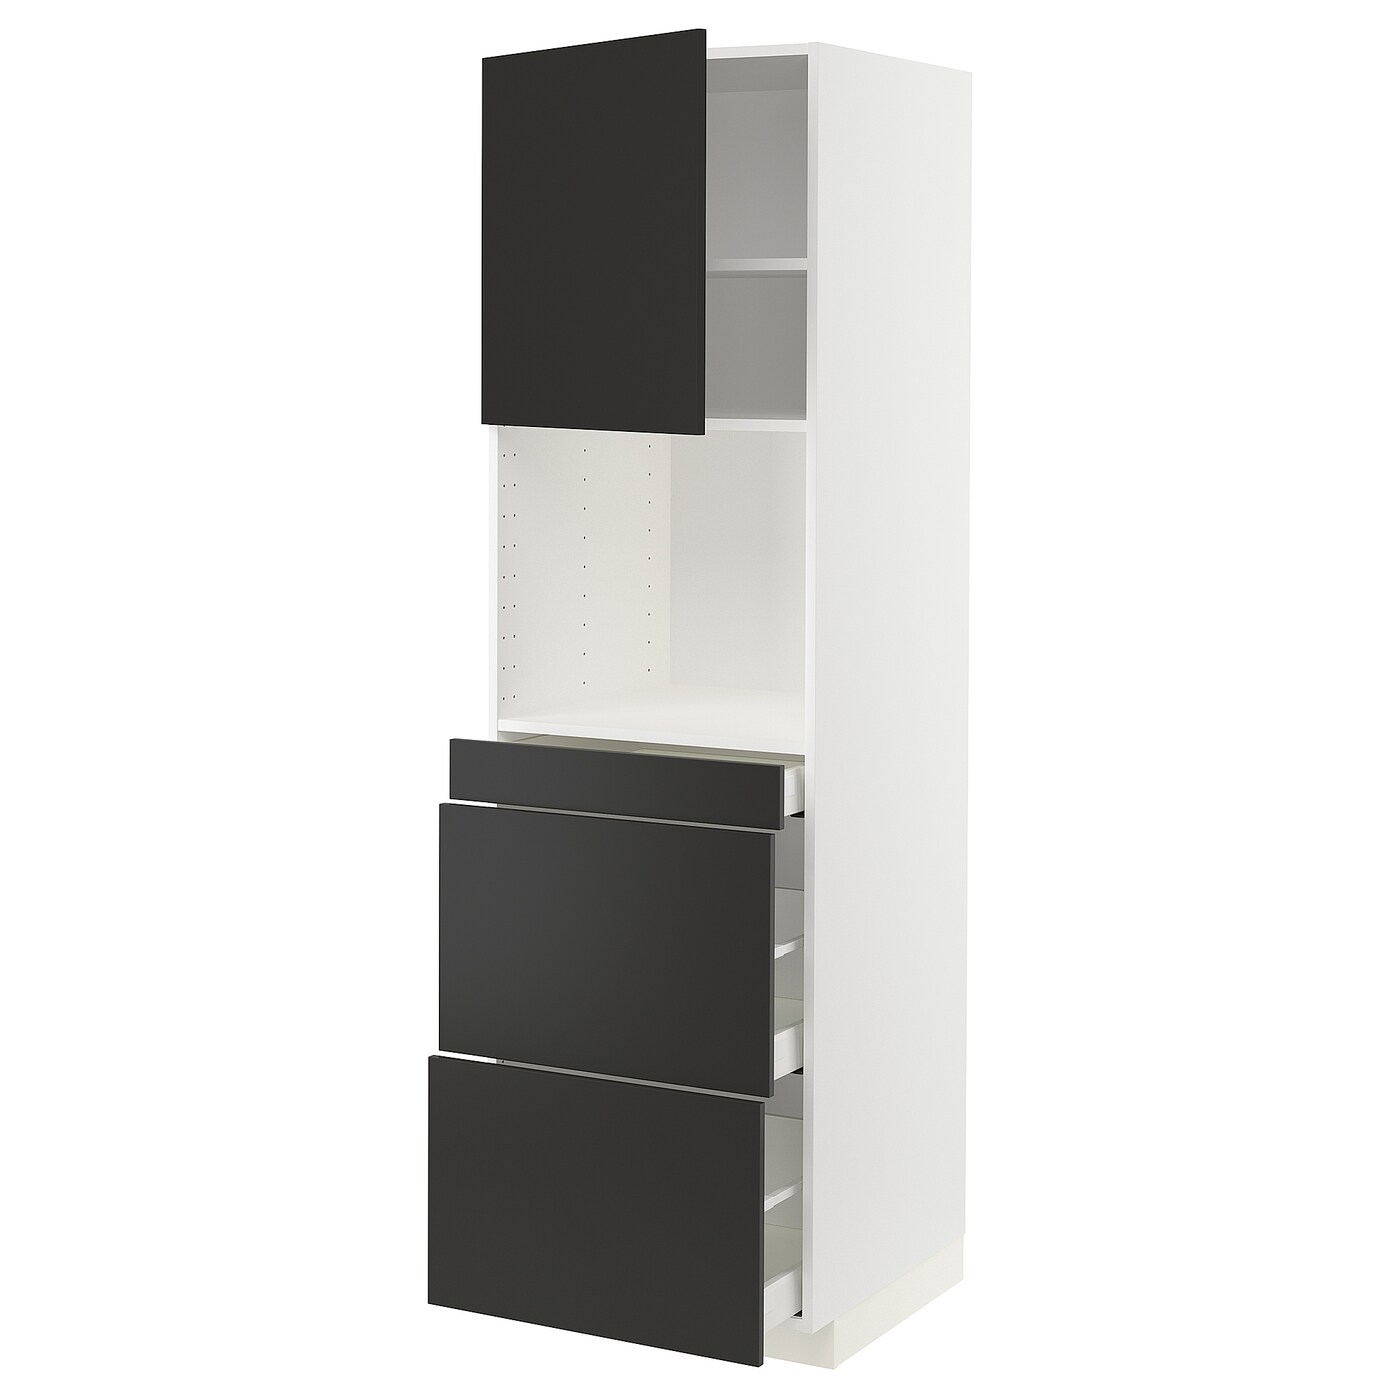 Модульный шкаф - METOD / MAXIMERA IKEA/ МЕТОД/МАКСИМЕРА  ИКЕА, 208х60 см, белый/черный